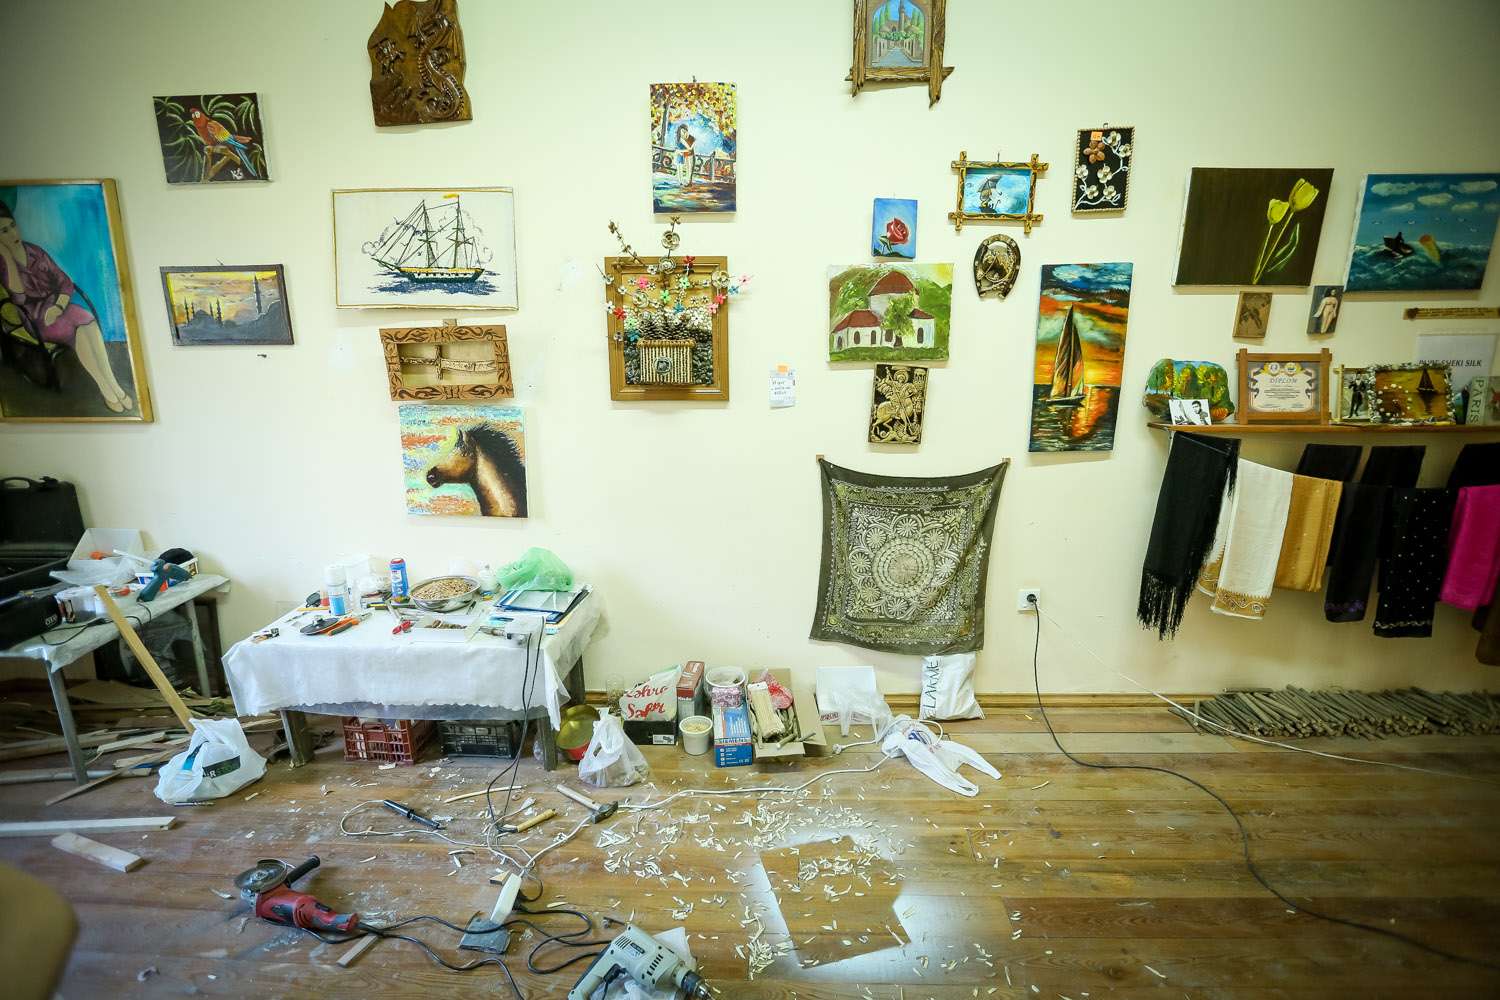 Elkhan hangs and displays his works in his own work room